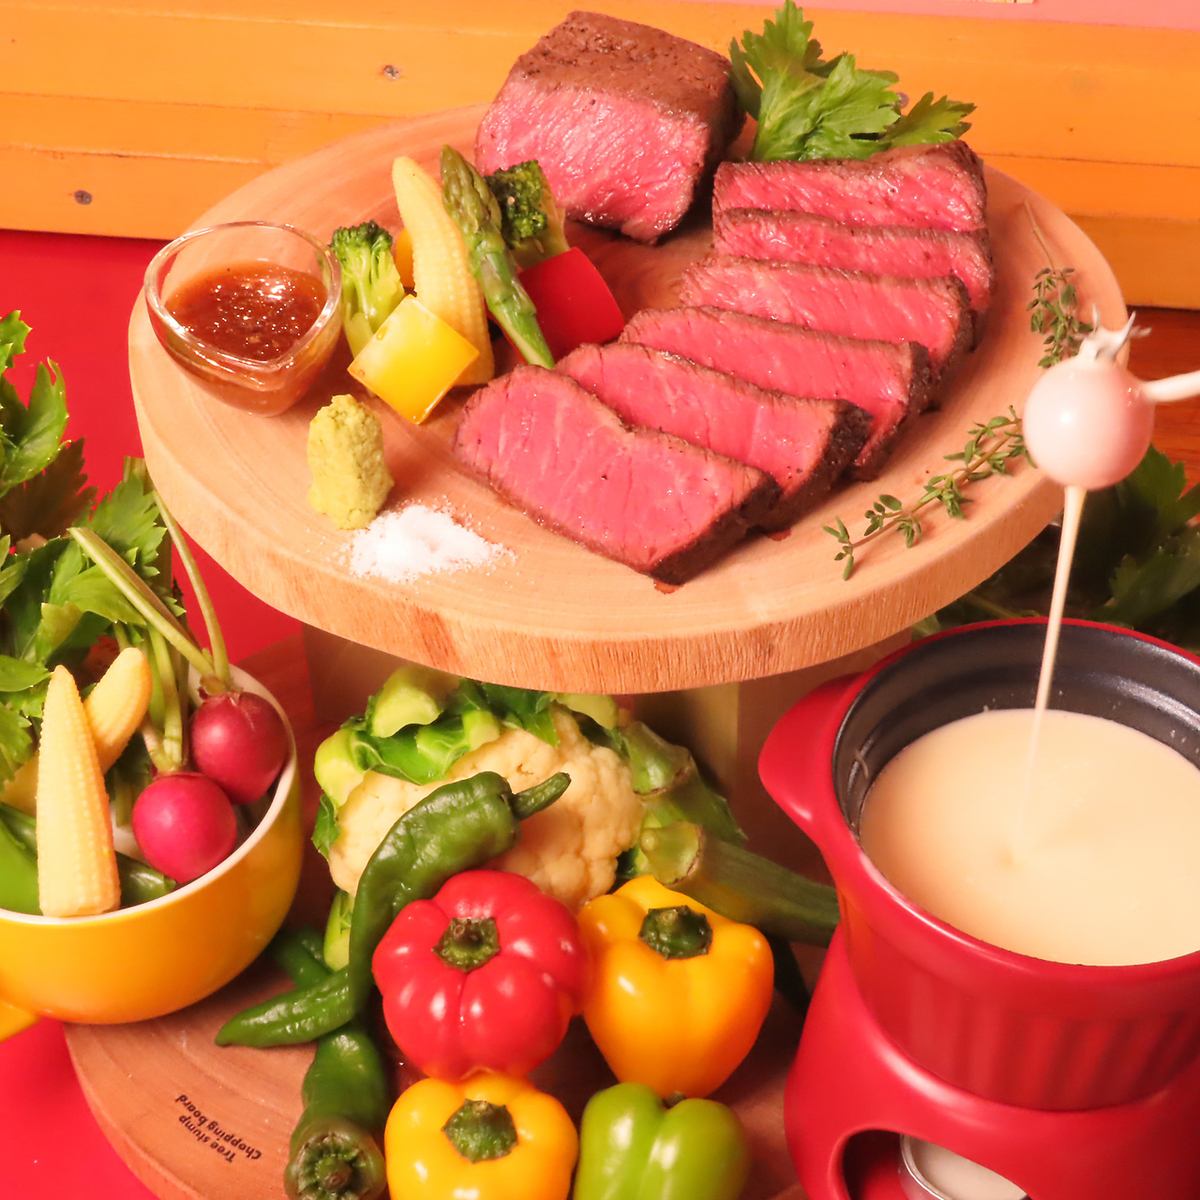 Enjoy a hearty meat platter!